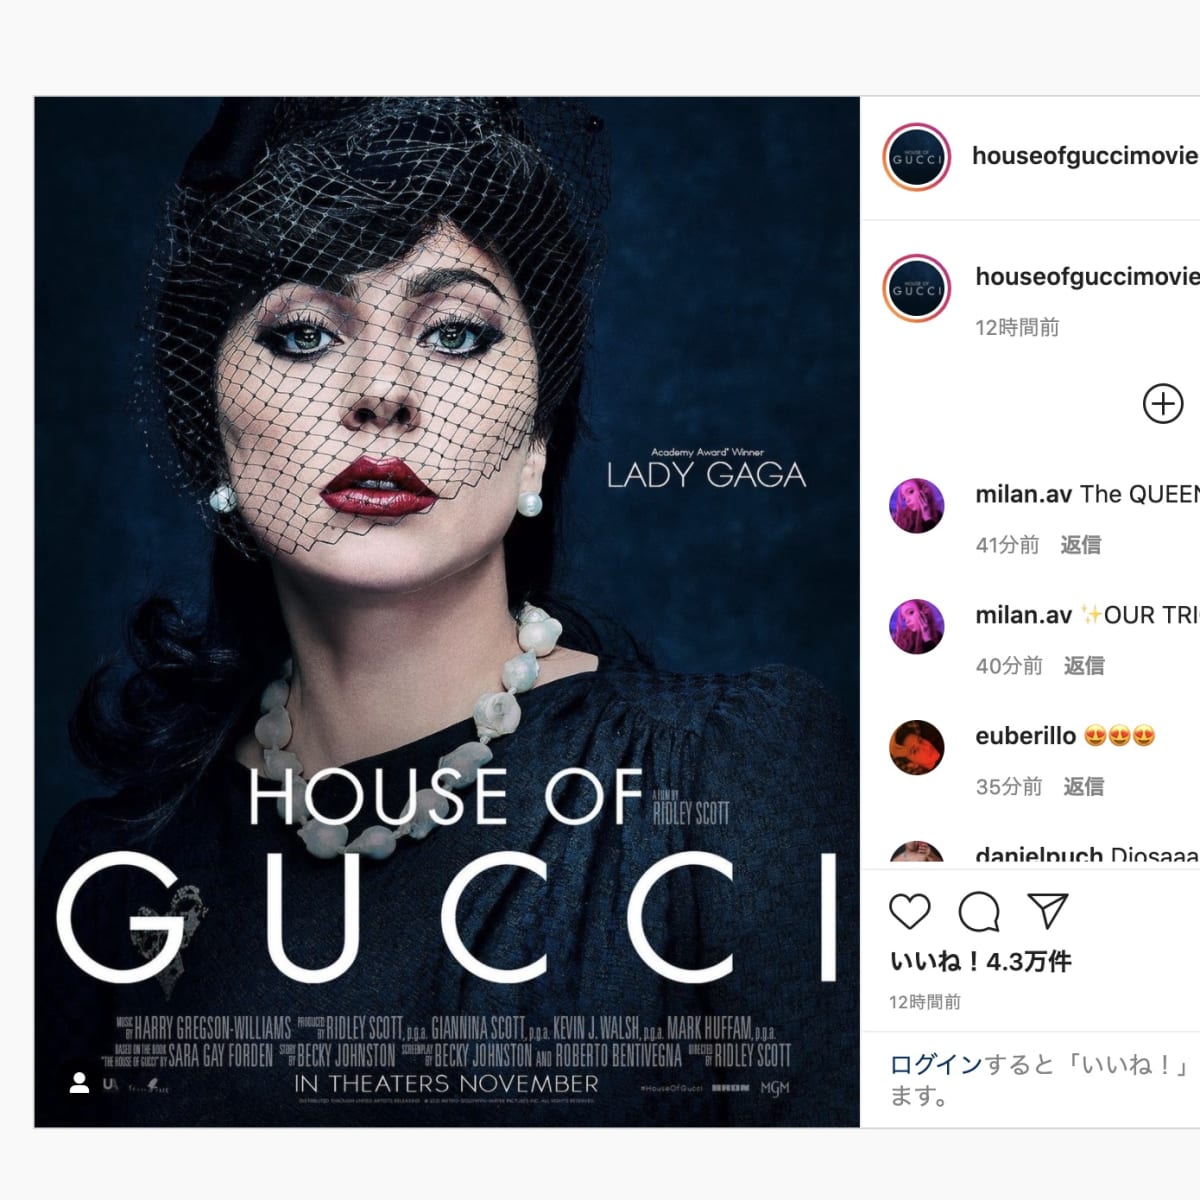 グッチ一族の争いを描いた映画「House of Gucci」のポスター 